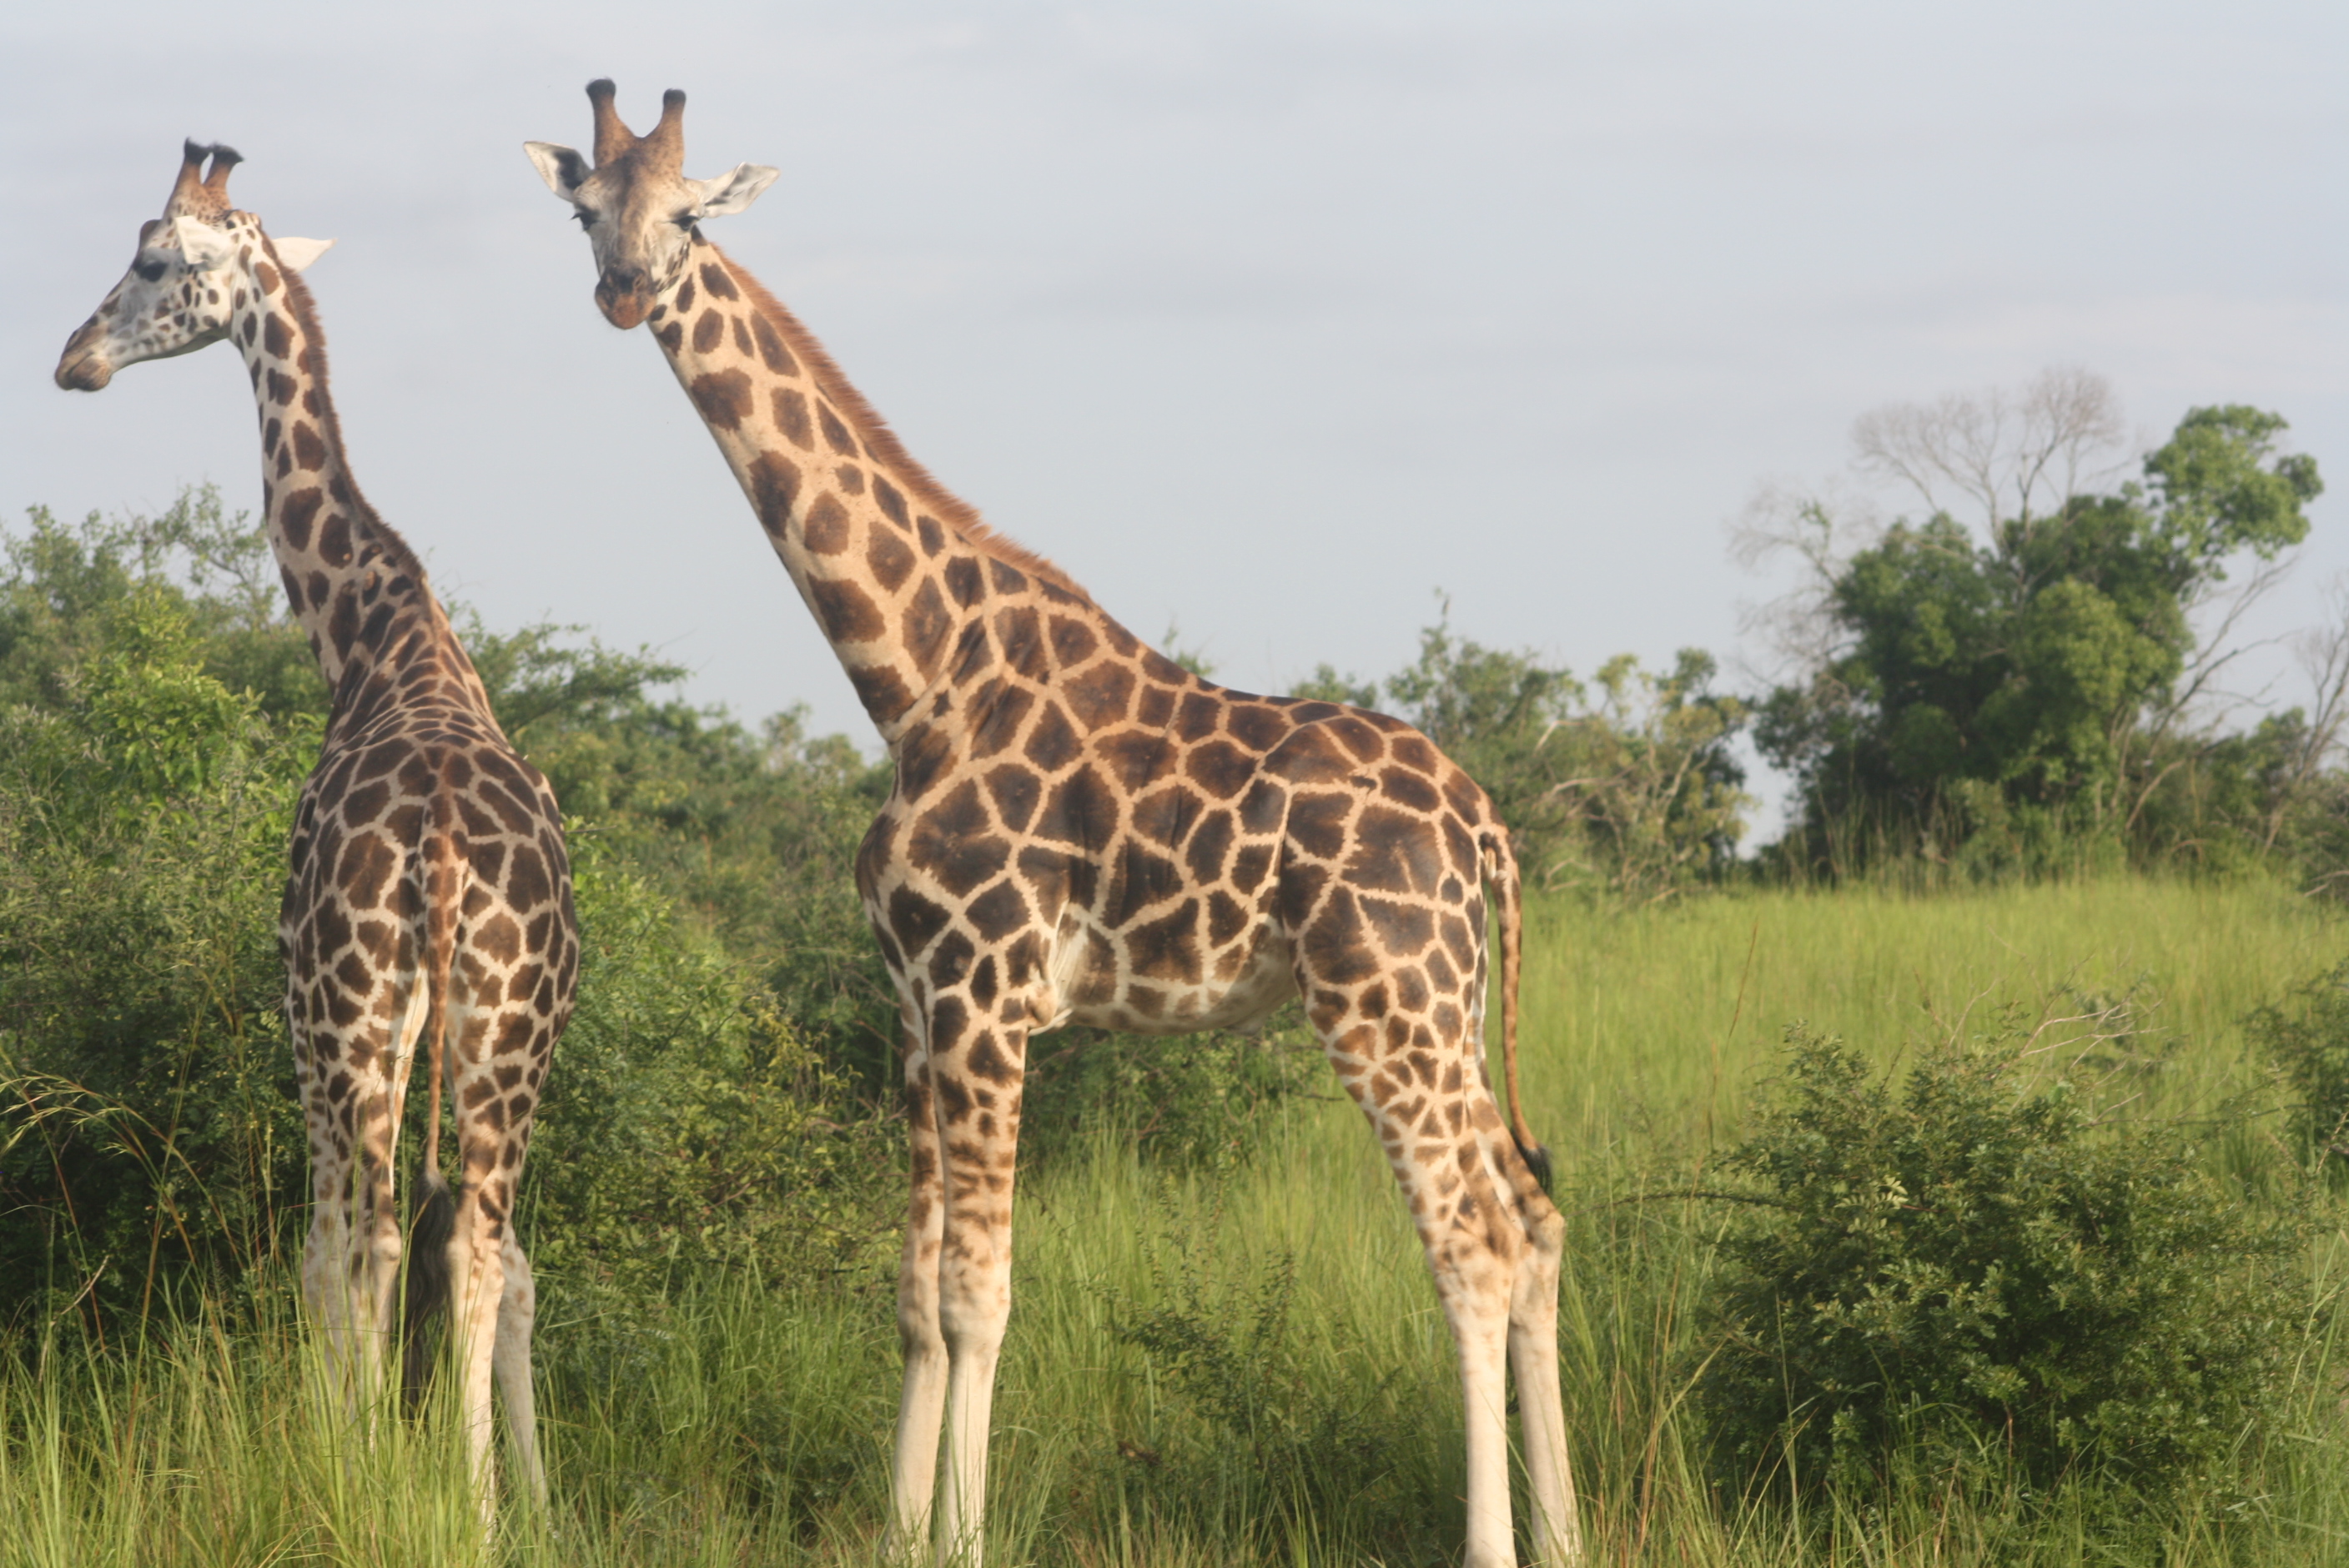 Wildlife safari ideas in Uganda